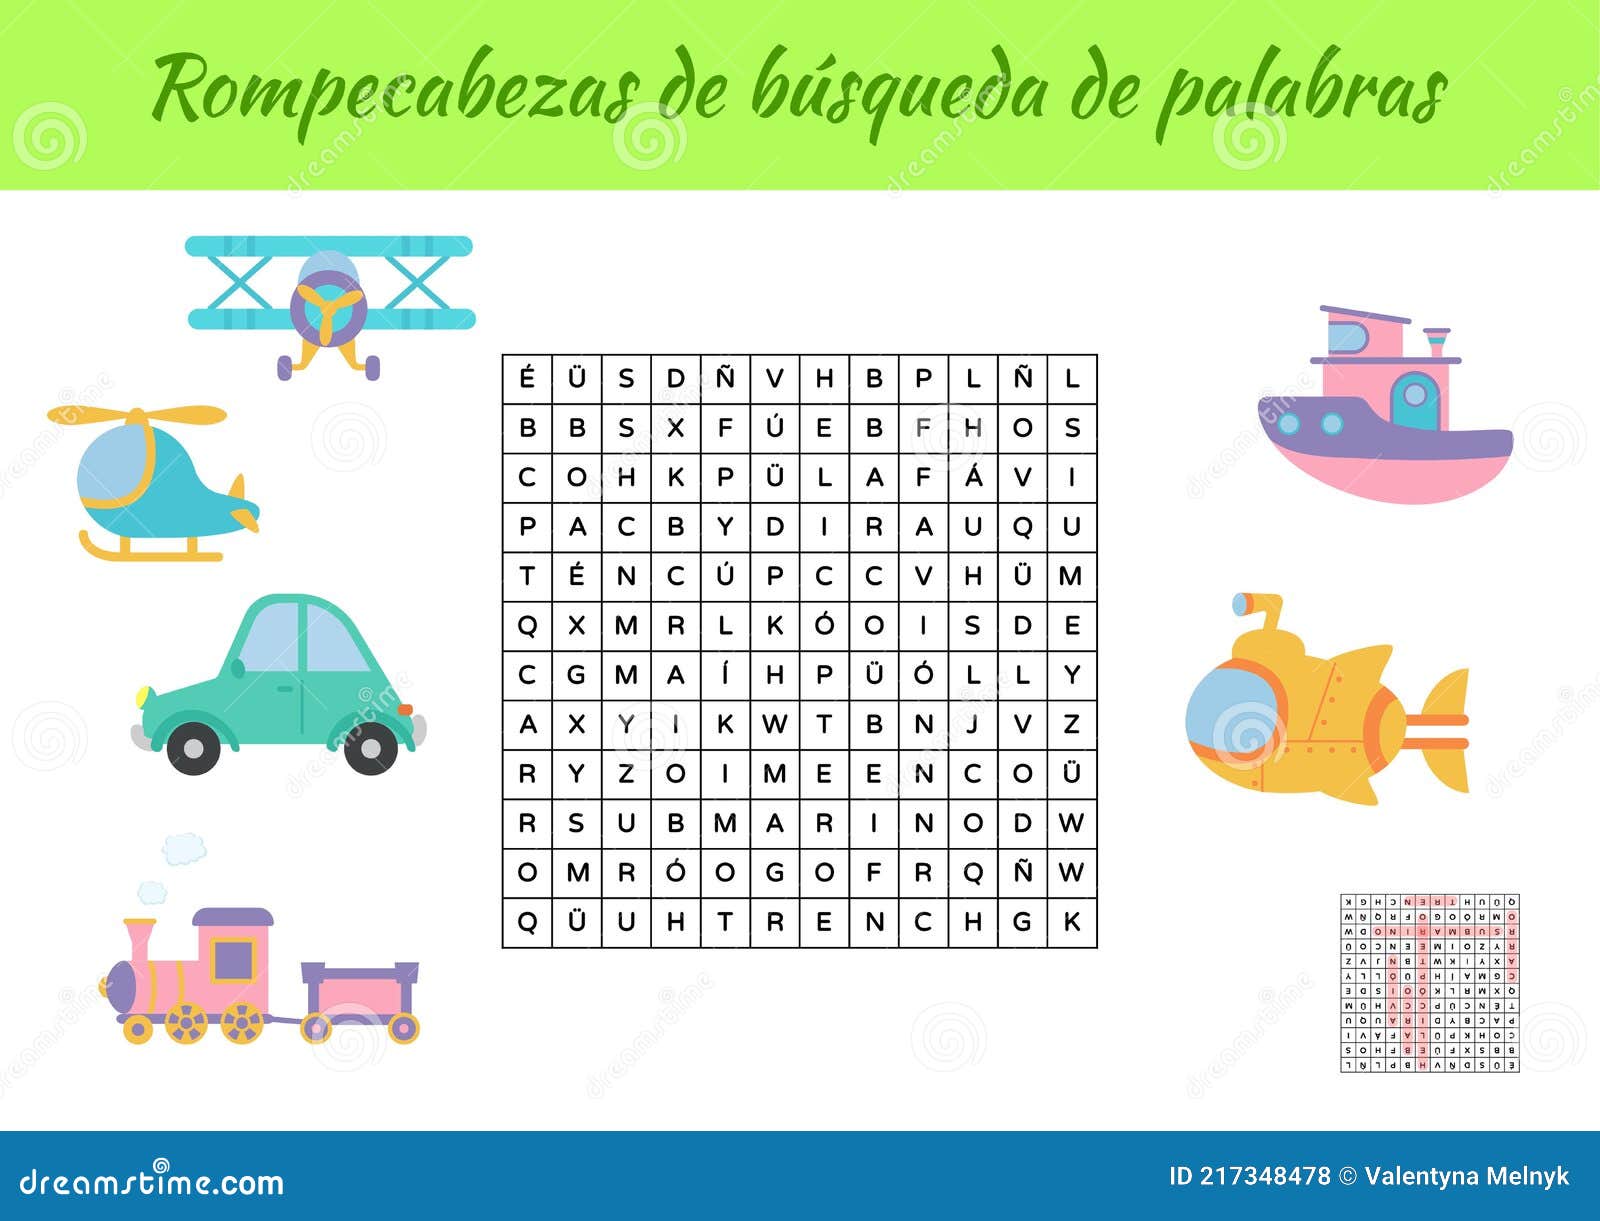 rompecabezas de bÃÂºsqueda de palabras - word search puzzle. educational game for study spanish words. kids activity worksheet